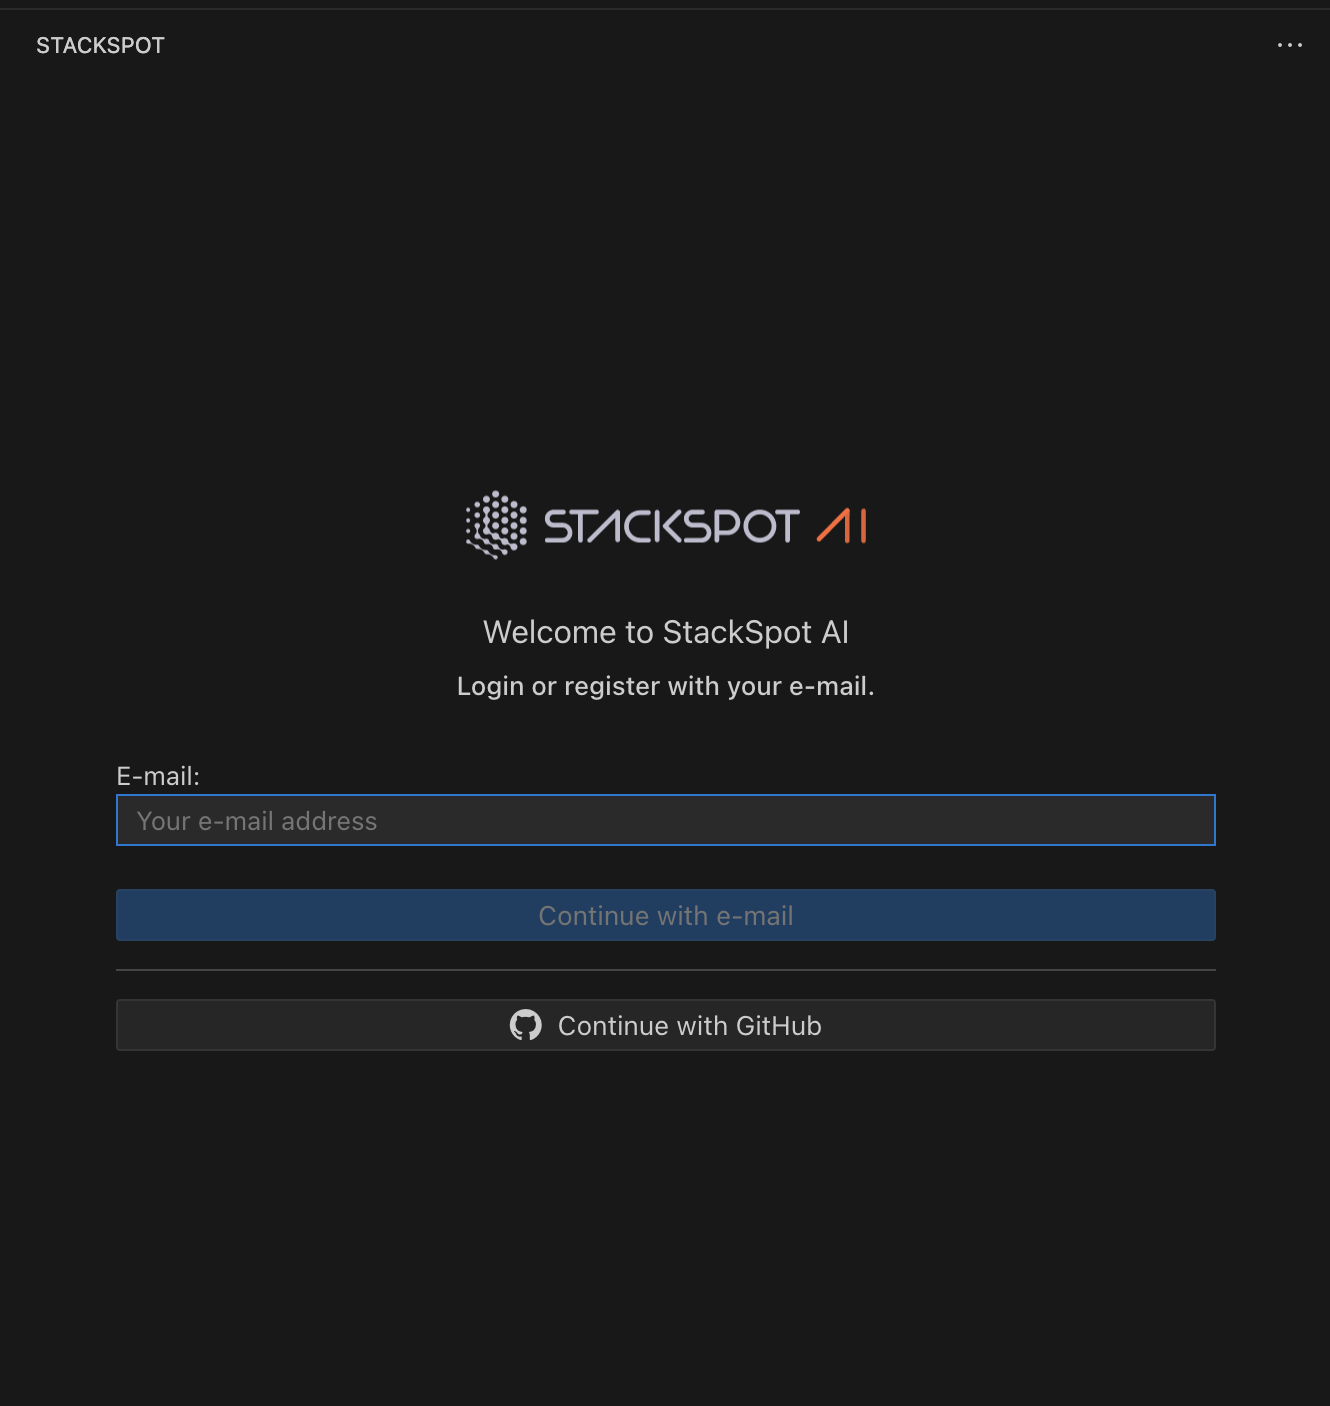 Print na tela de login, nele está StackSpot AI, espaço para o e-mail e a opção de continuar com GitHub.